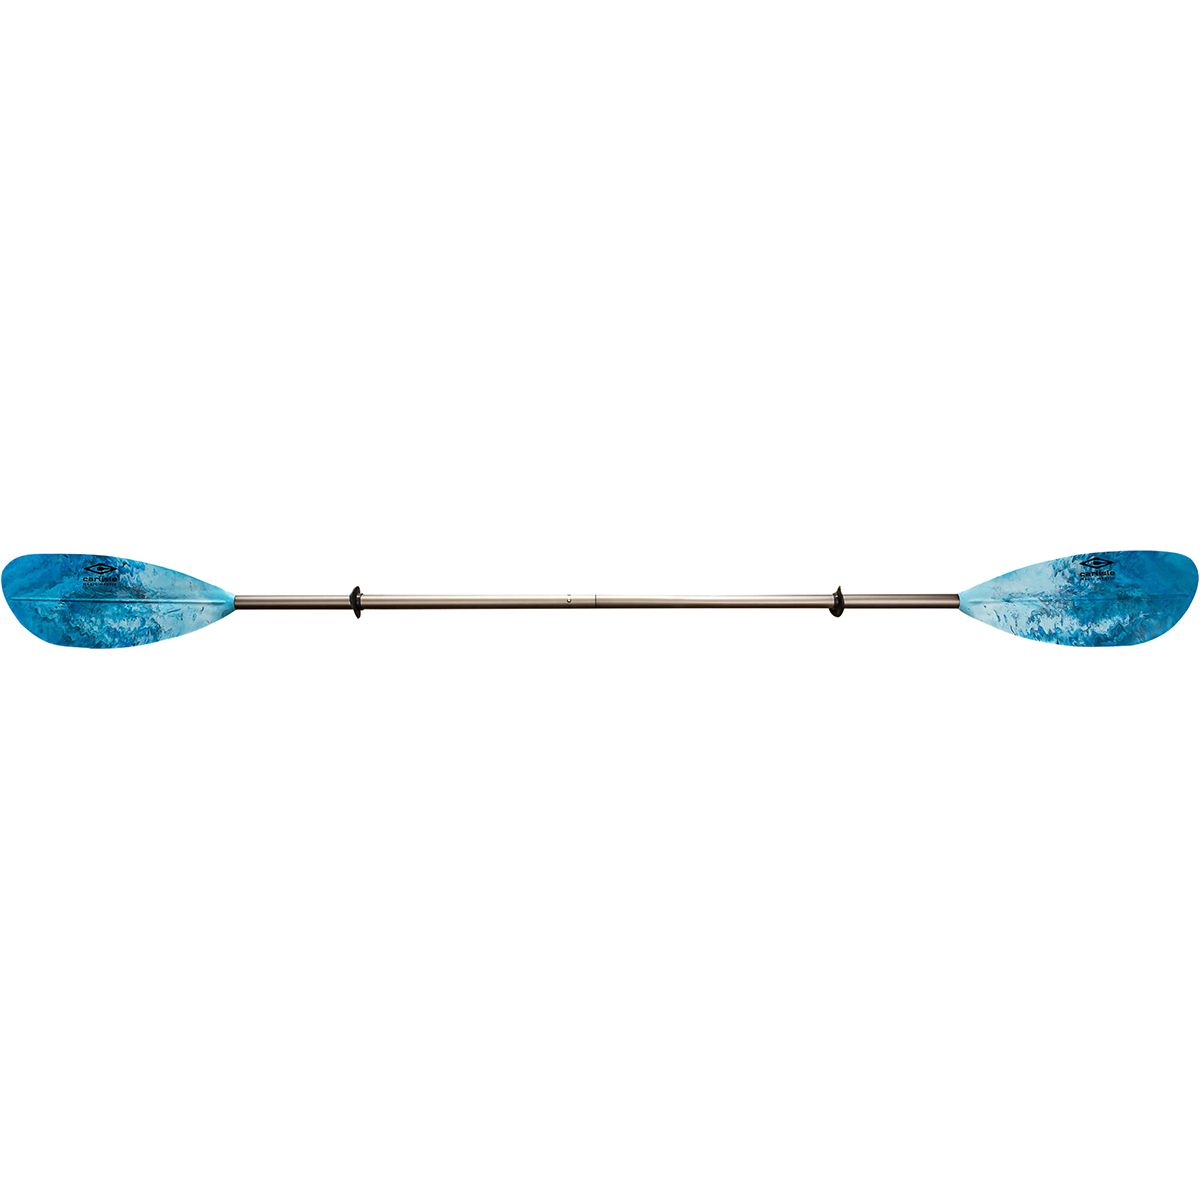 Carlisle Paddles Magic Mystic Aluminum Paddle - Straight Shaft